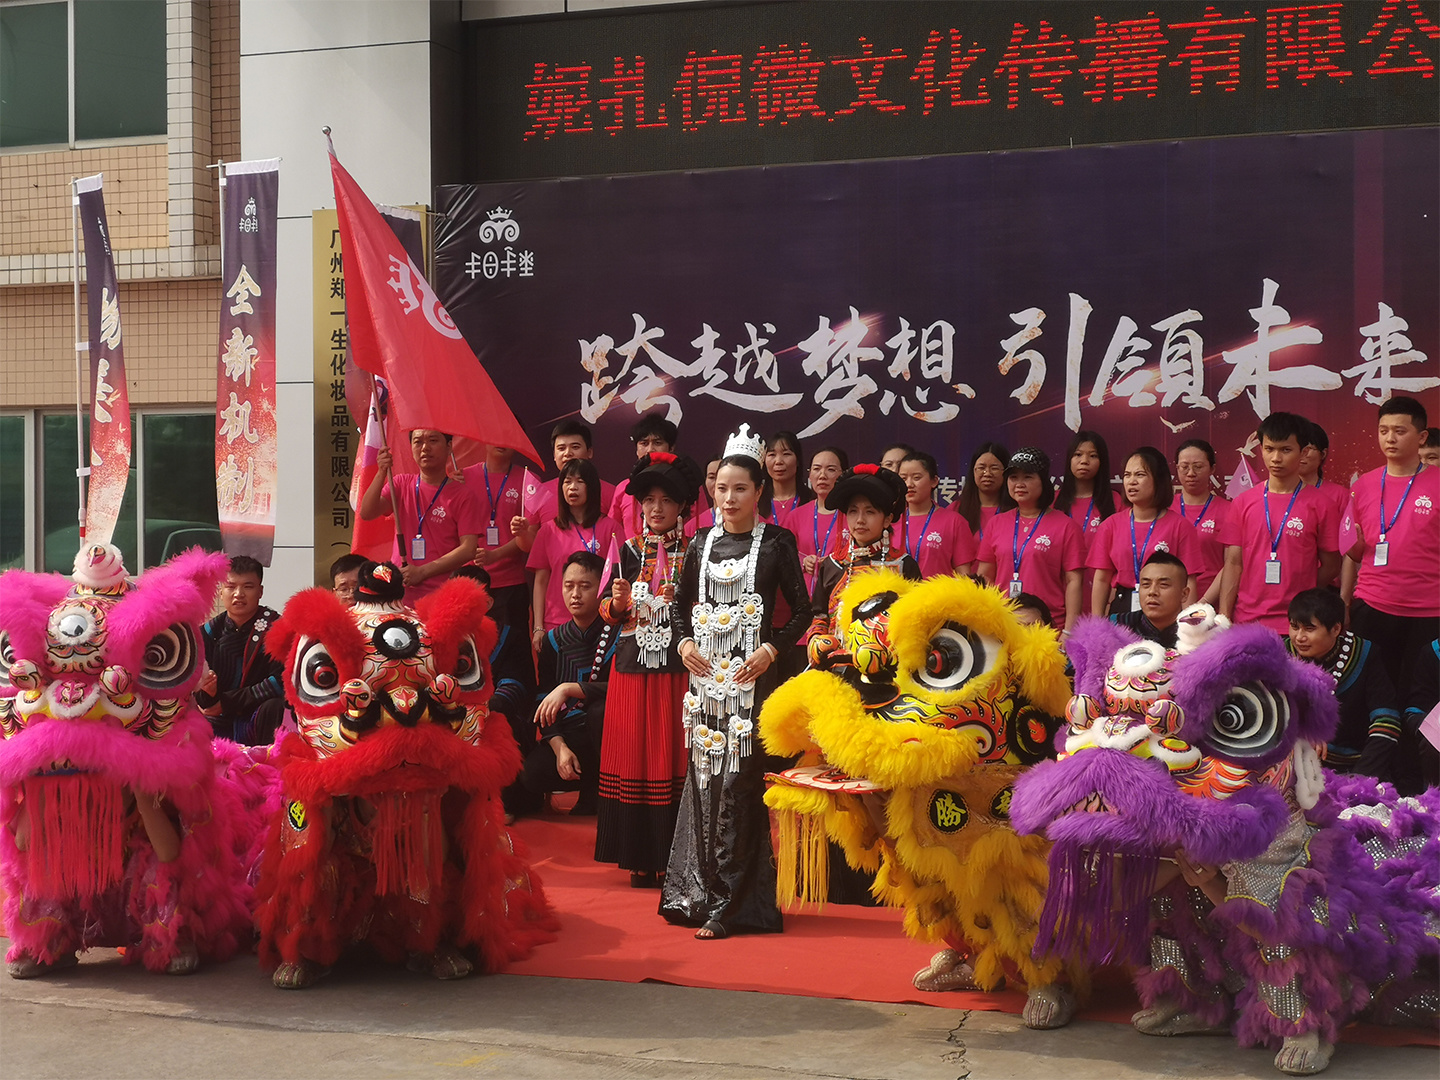 热烈祝贺成都妮扎倪薇文化传播有限公司广州分公司五周年庆典发布会圆满成功